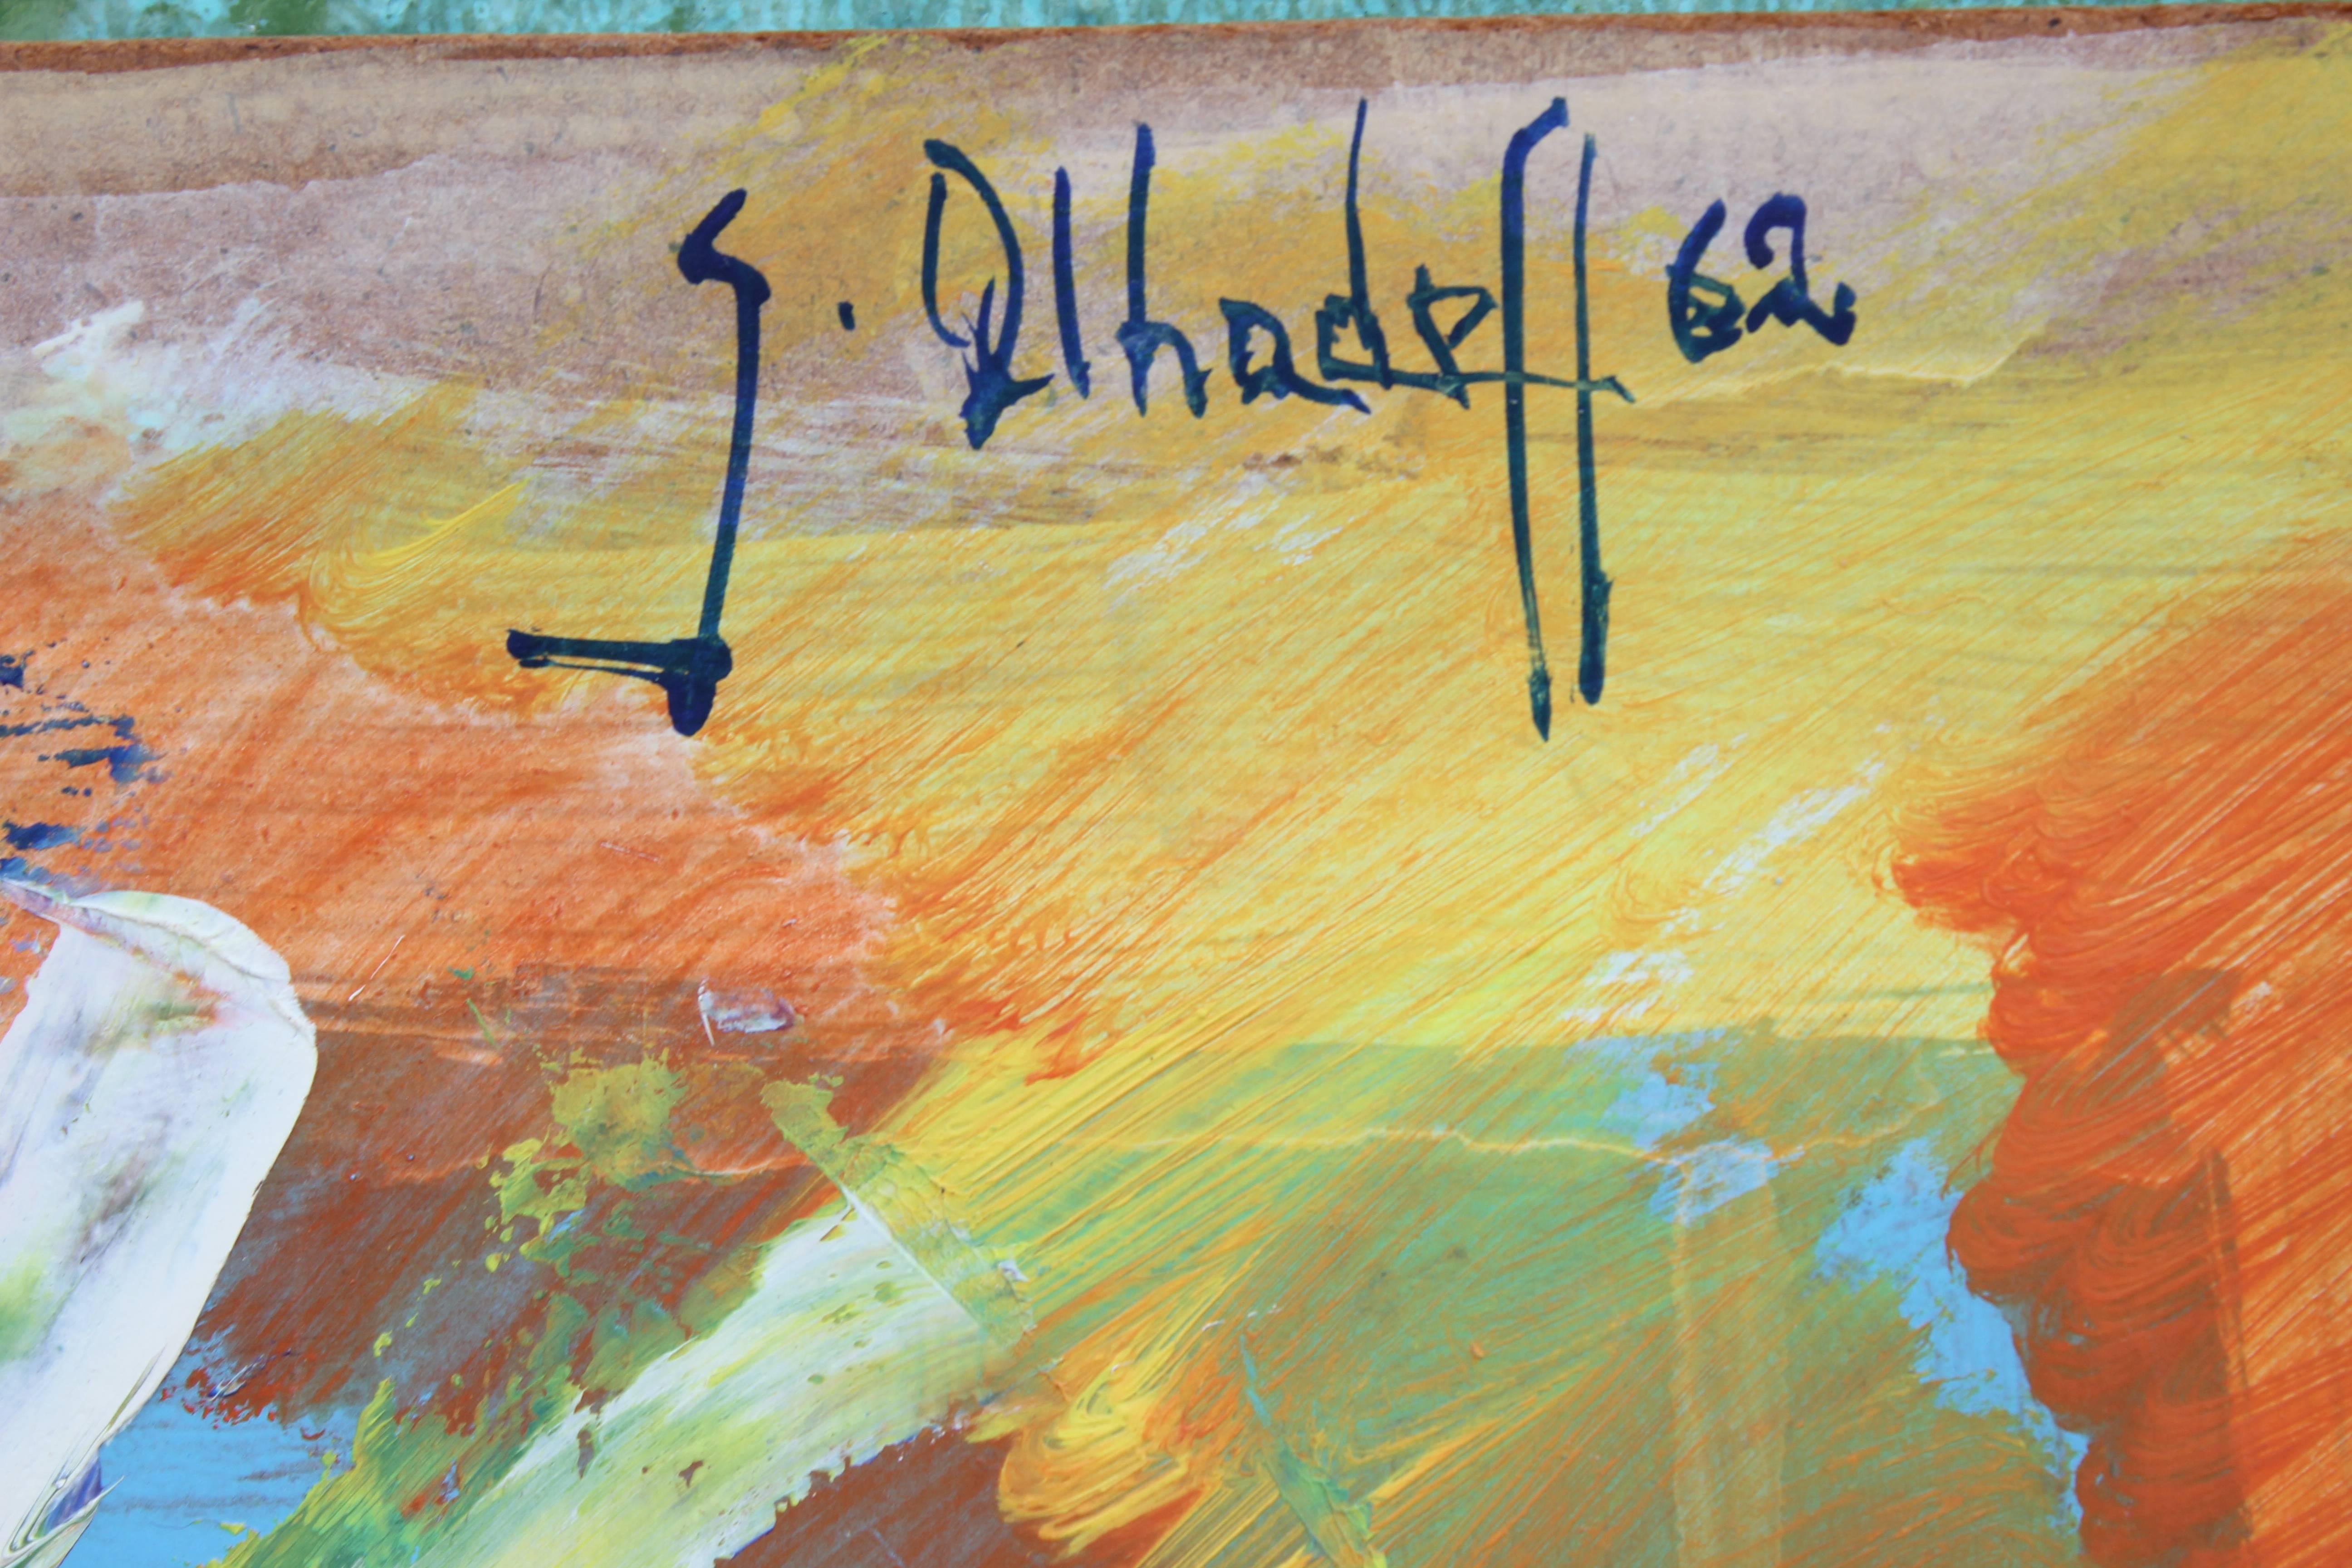 Abstraktes expressionistisches Tribal-Gemälde eines weiblichen Aktes in kräftigen, leuchtenden Farben des Künstlers Gustave Alhadeff aus dem Jahr 1962 mit Acrylfarben. Signiert in der oberen rechten Ecke. 

Biographie des Künstlers:
Der 1940 in